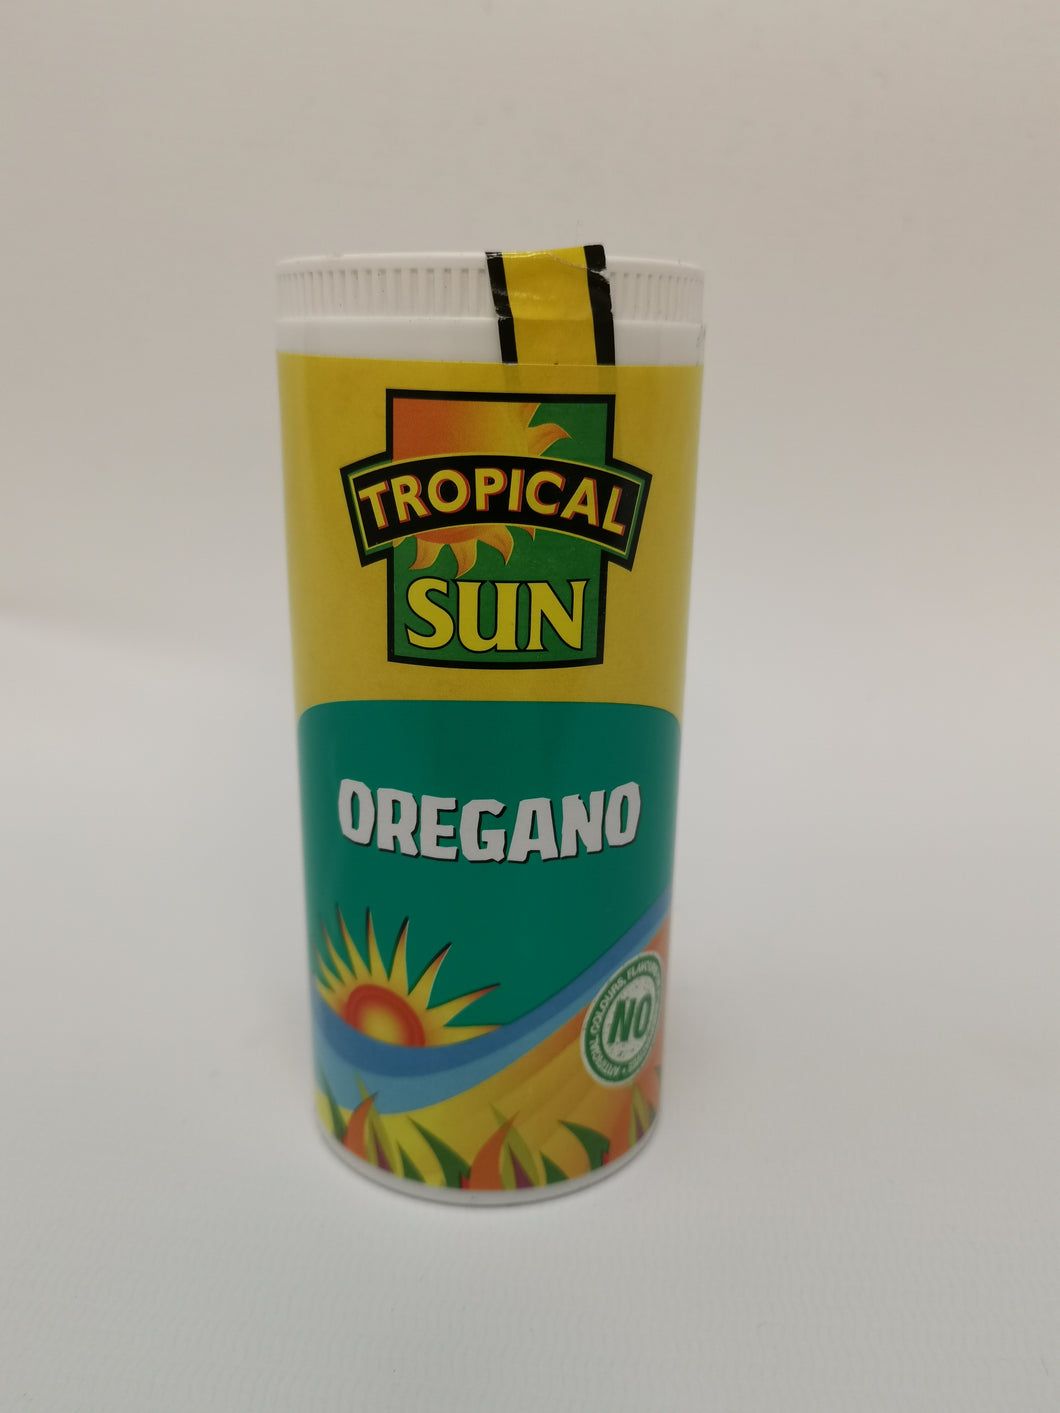 Tropical Sun Oregano 30g